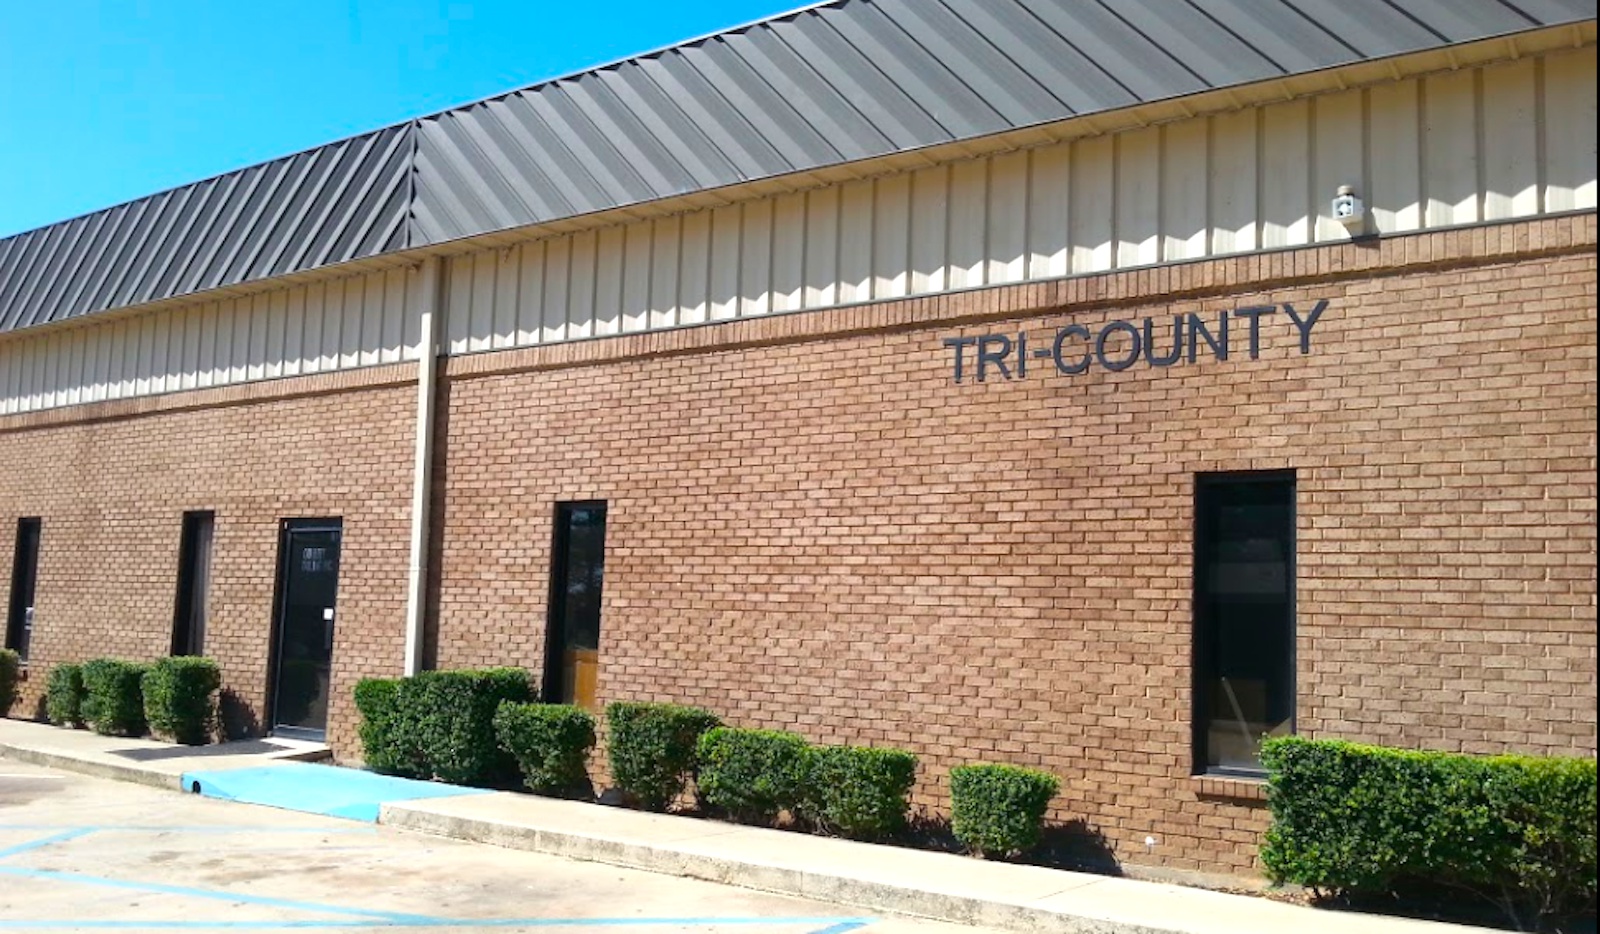 New Season - Tri County Treatment Center cover